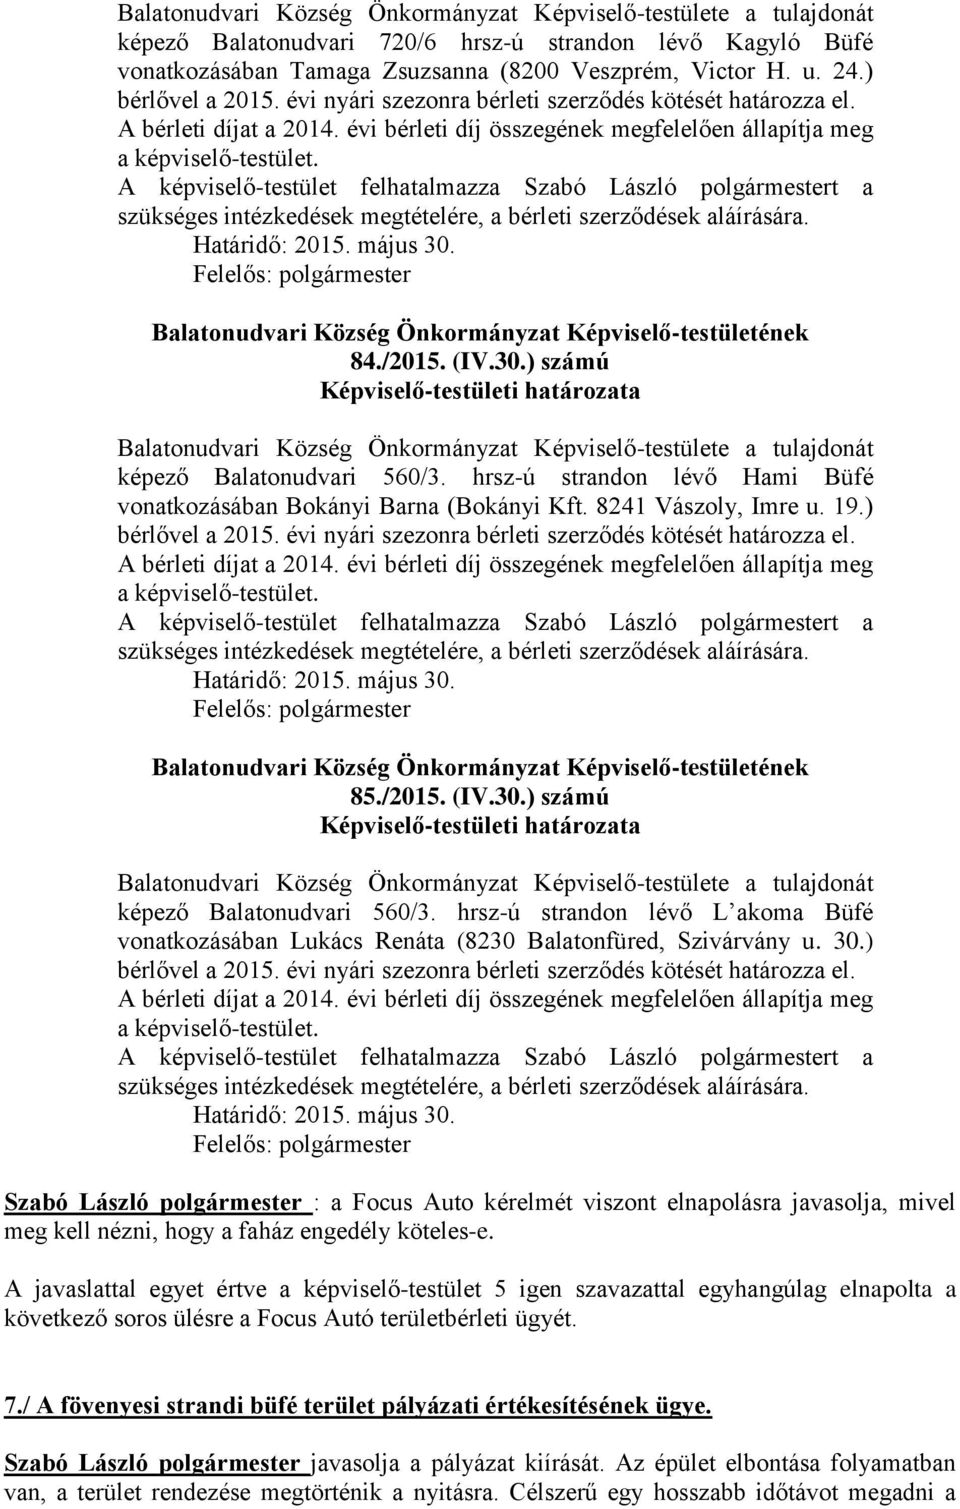 A képviselő-testület felhatalmazza Szabó László polgármestert a szükséges intézkedések megtételére, a bérleti szerződések aláírására. Határidő: 2015. május 30.